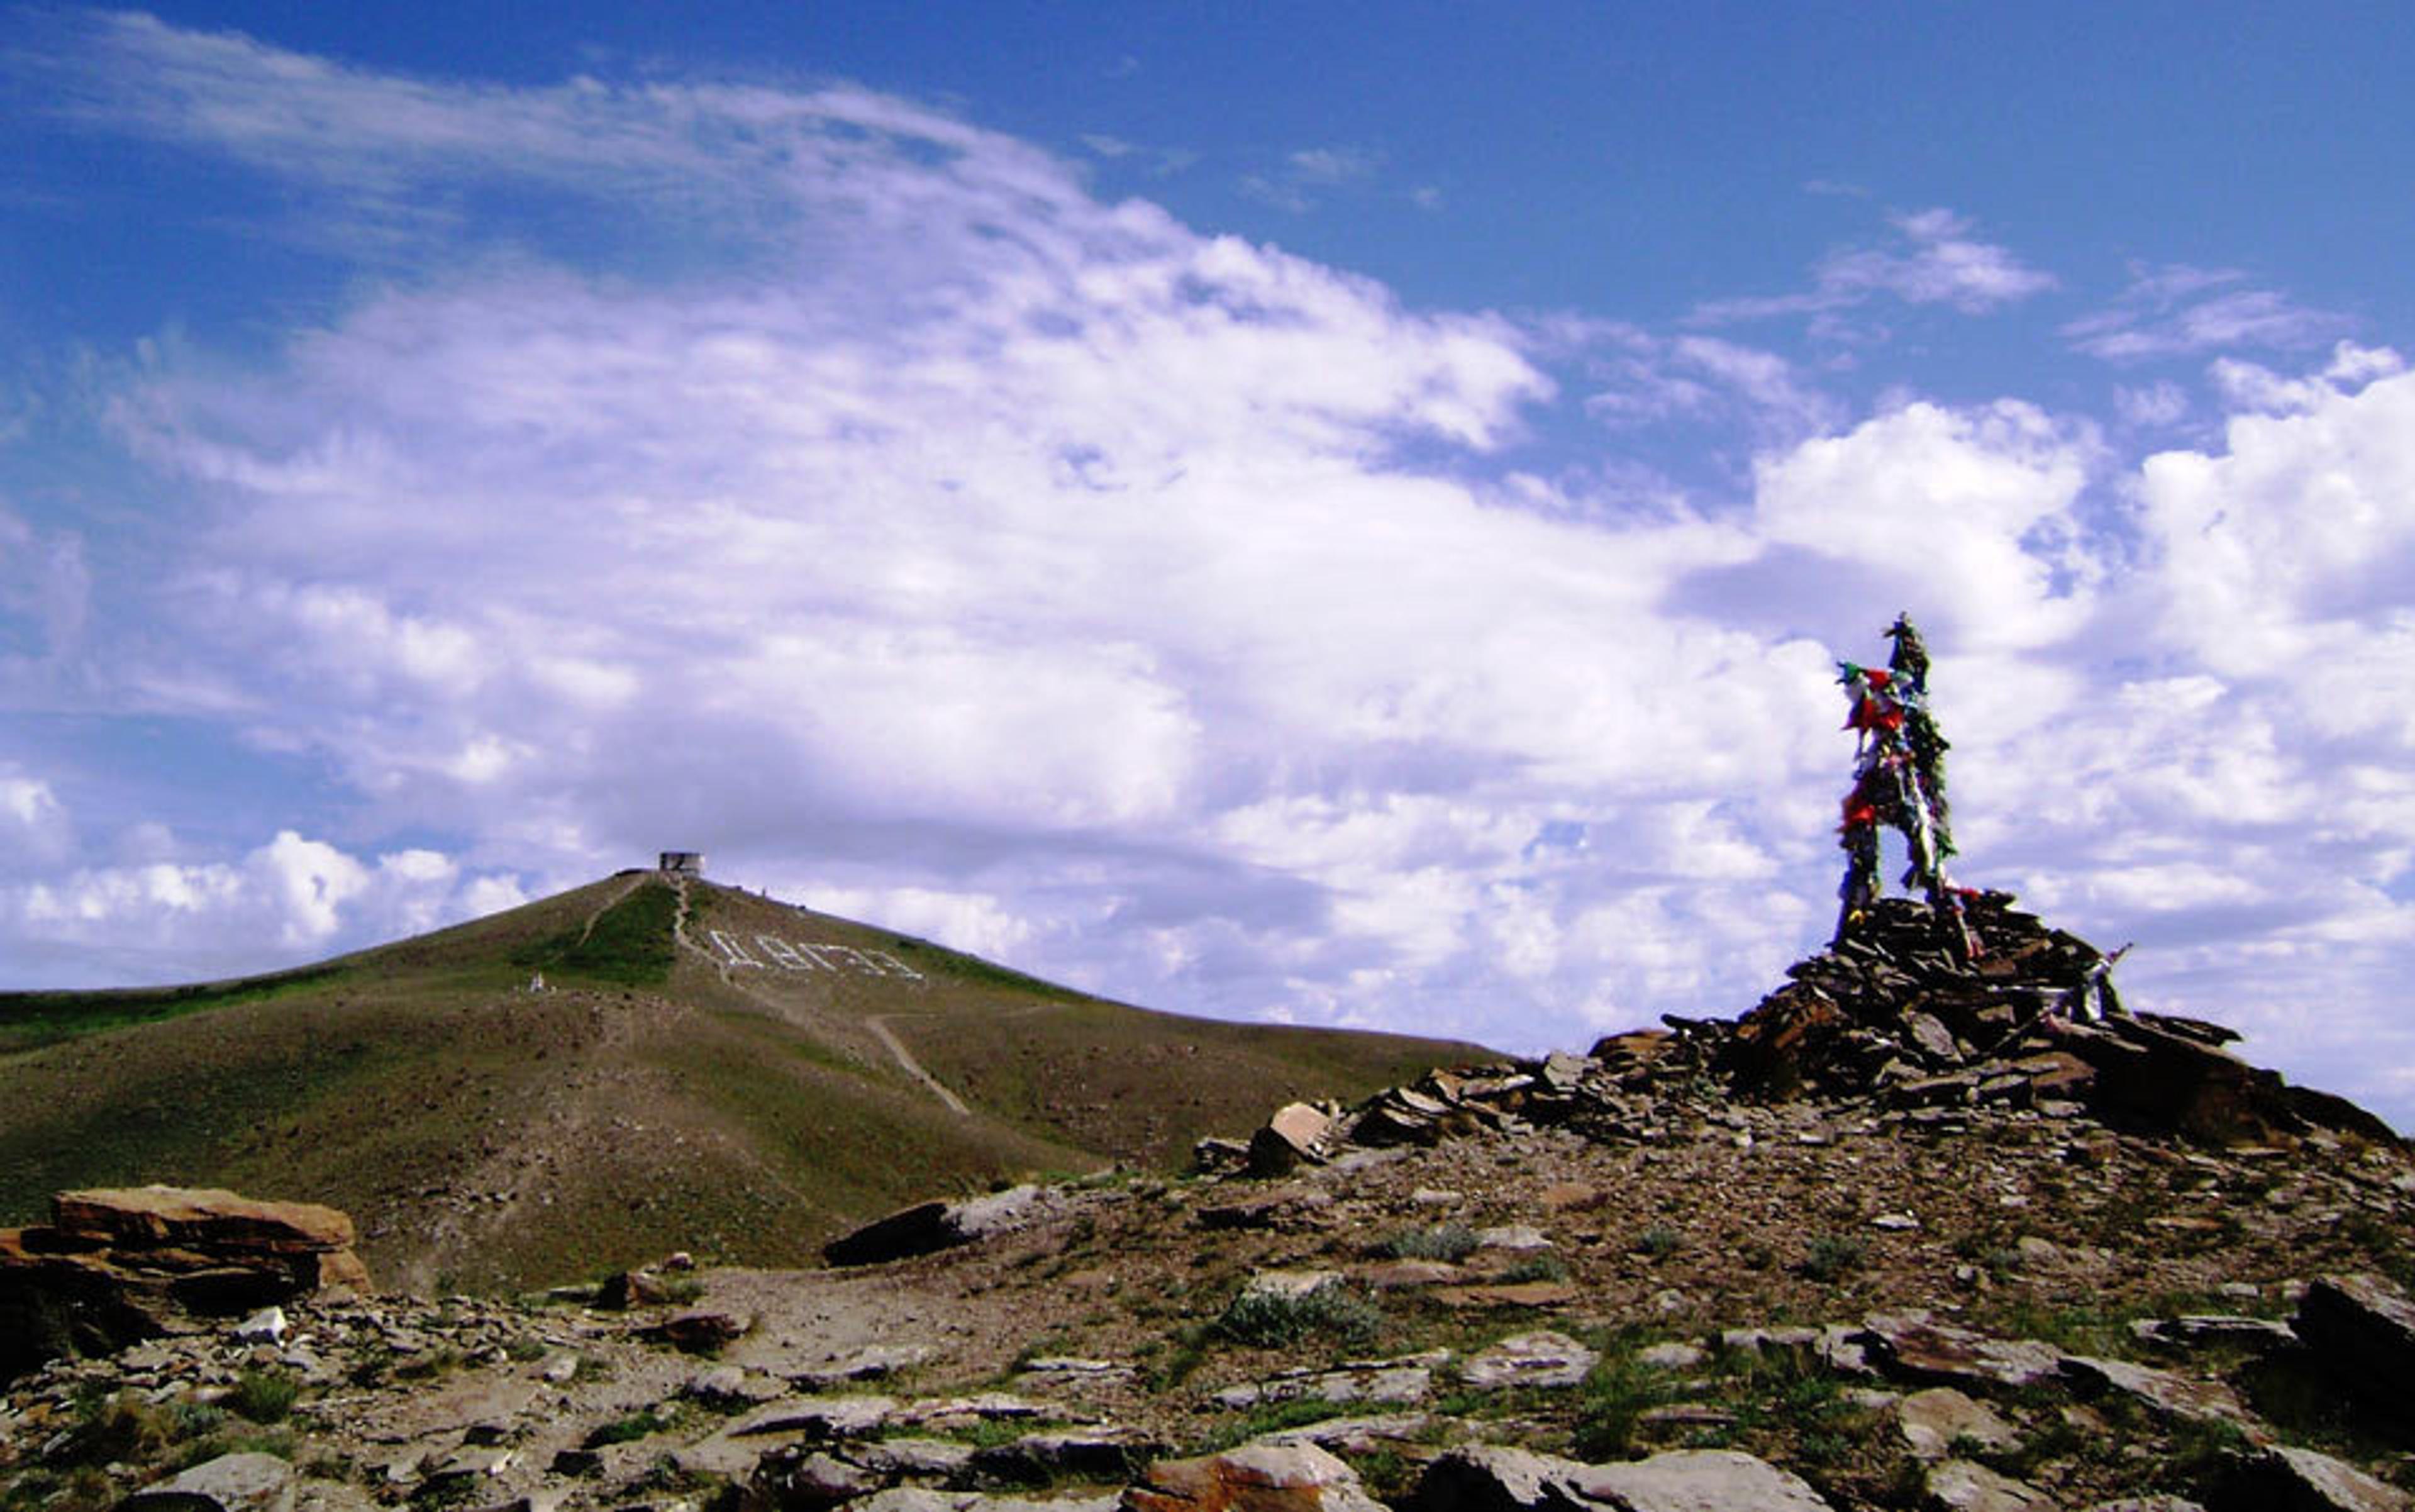 A cairn on Dögee Mountain, Kyzyl, Tyva Republic. Photo courtesy the author